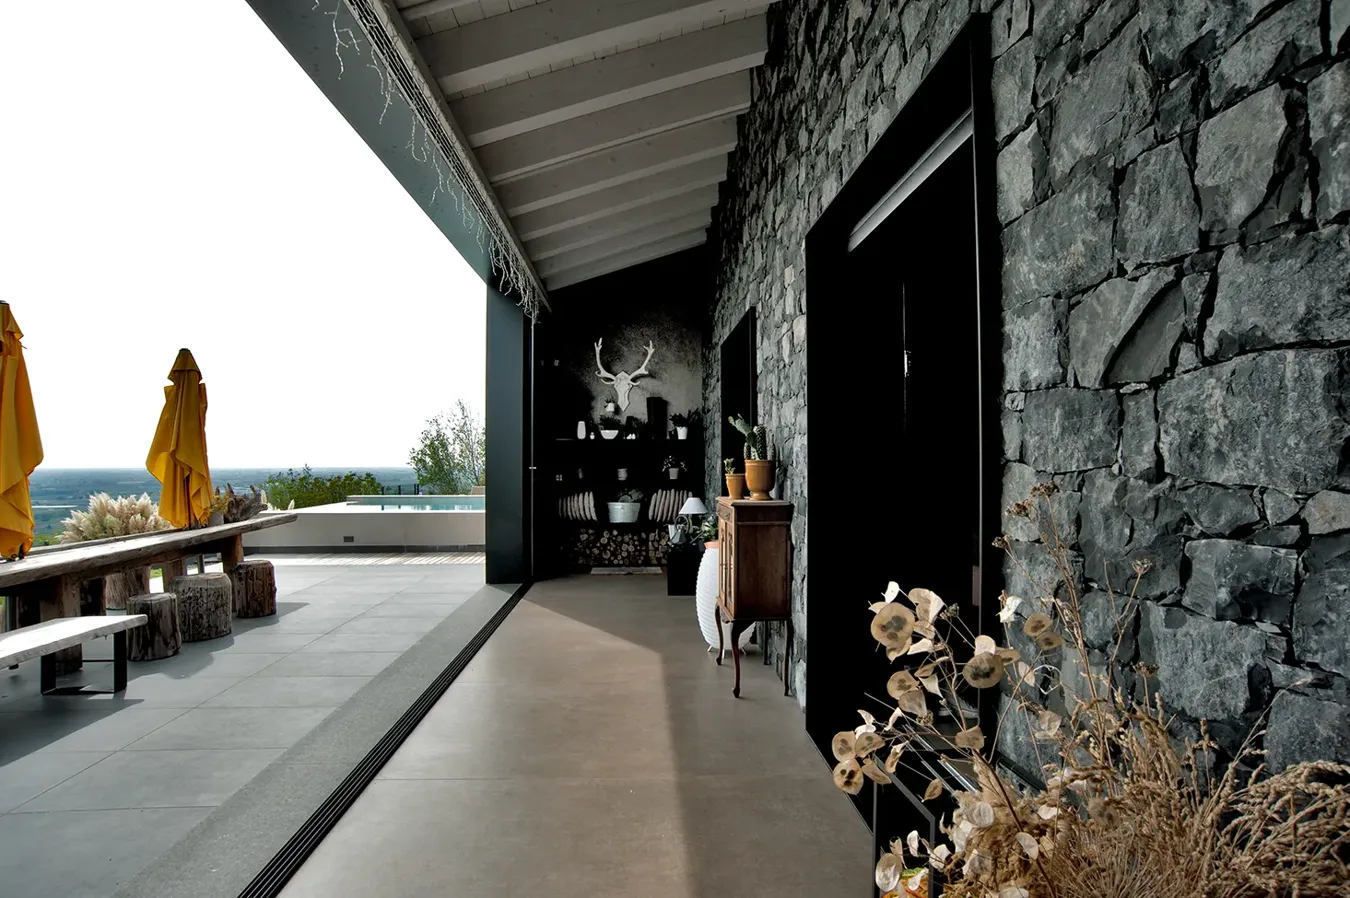 Terrazza elegante con piastrelle effetto cemento colore Ivory della collezione Moov, parete in pietra e vista mare.